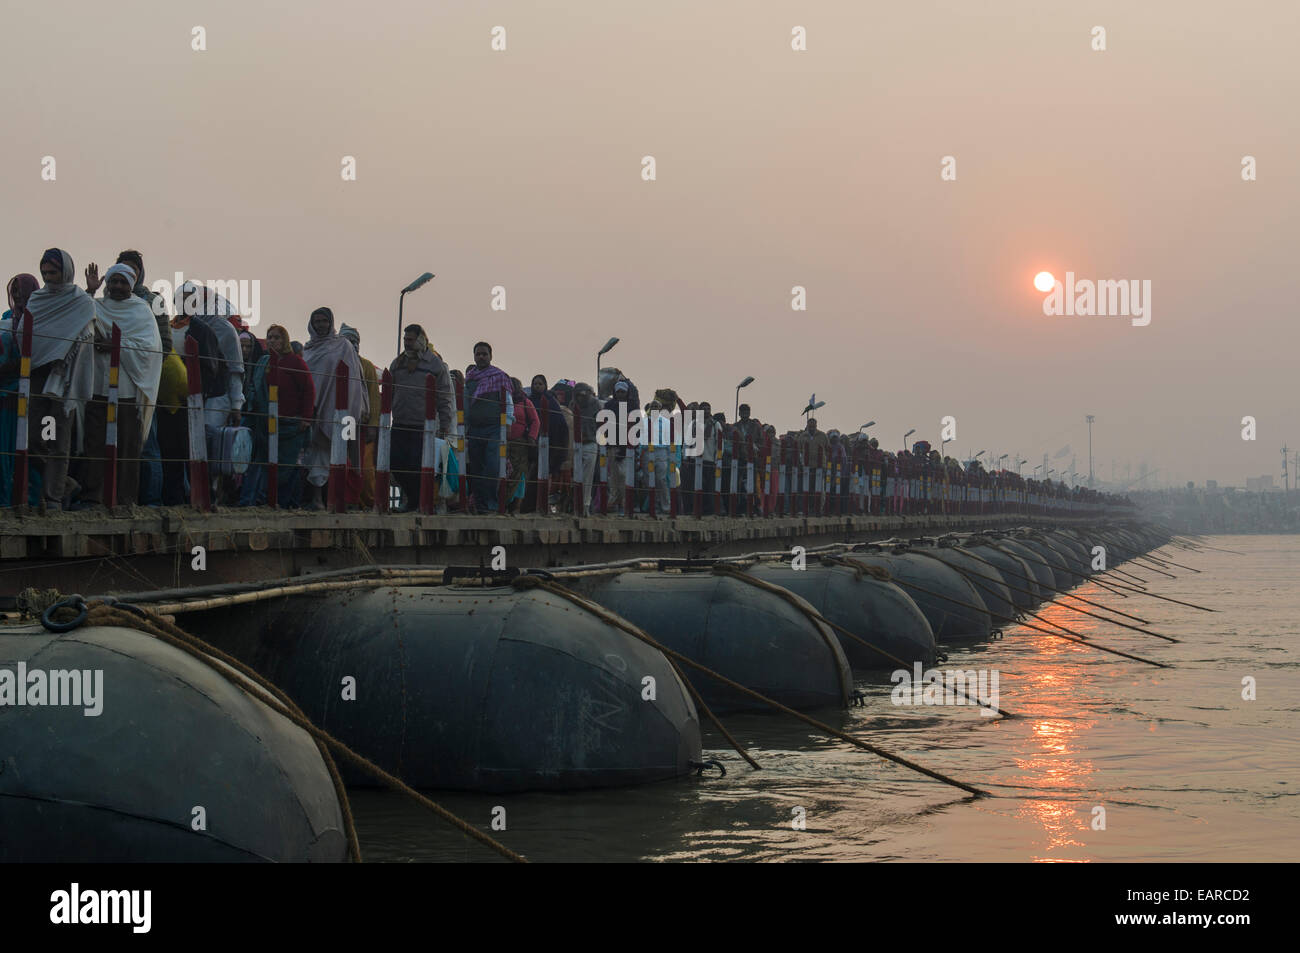 Des foules de gens arrivant à Kumbha Mela, marcher sur des ponts de bateaux, Allahabad, Uttar Pradesh, Inde Banque D'Images